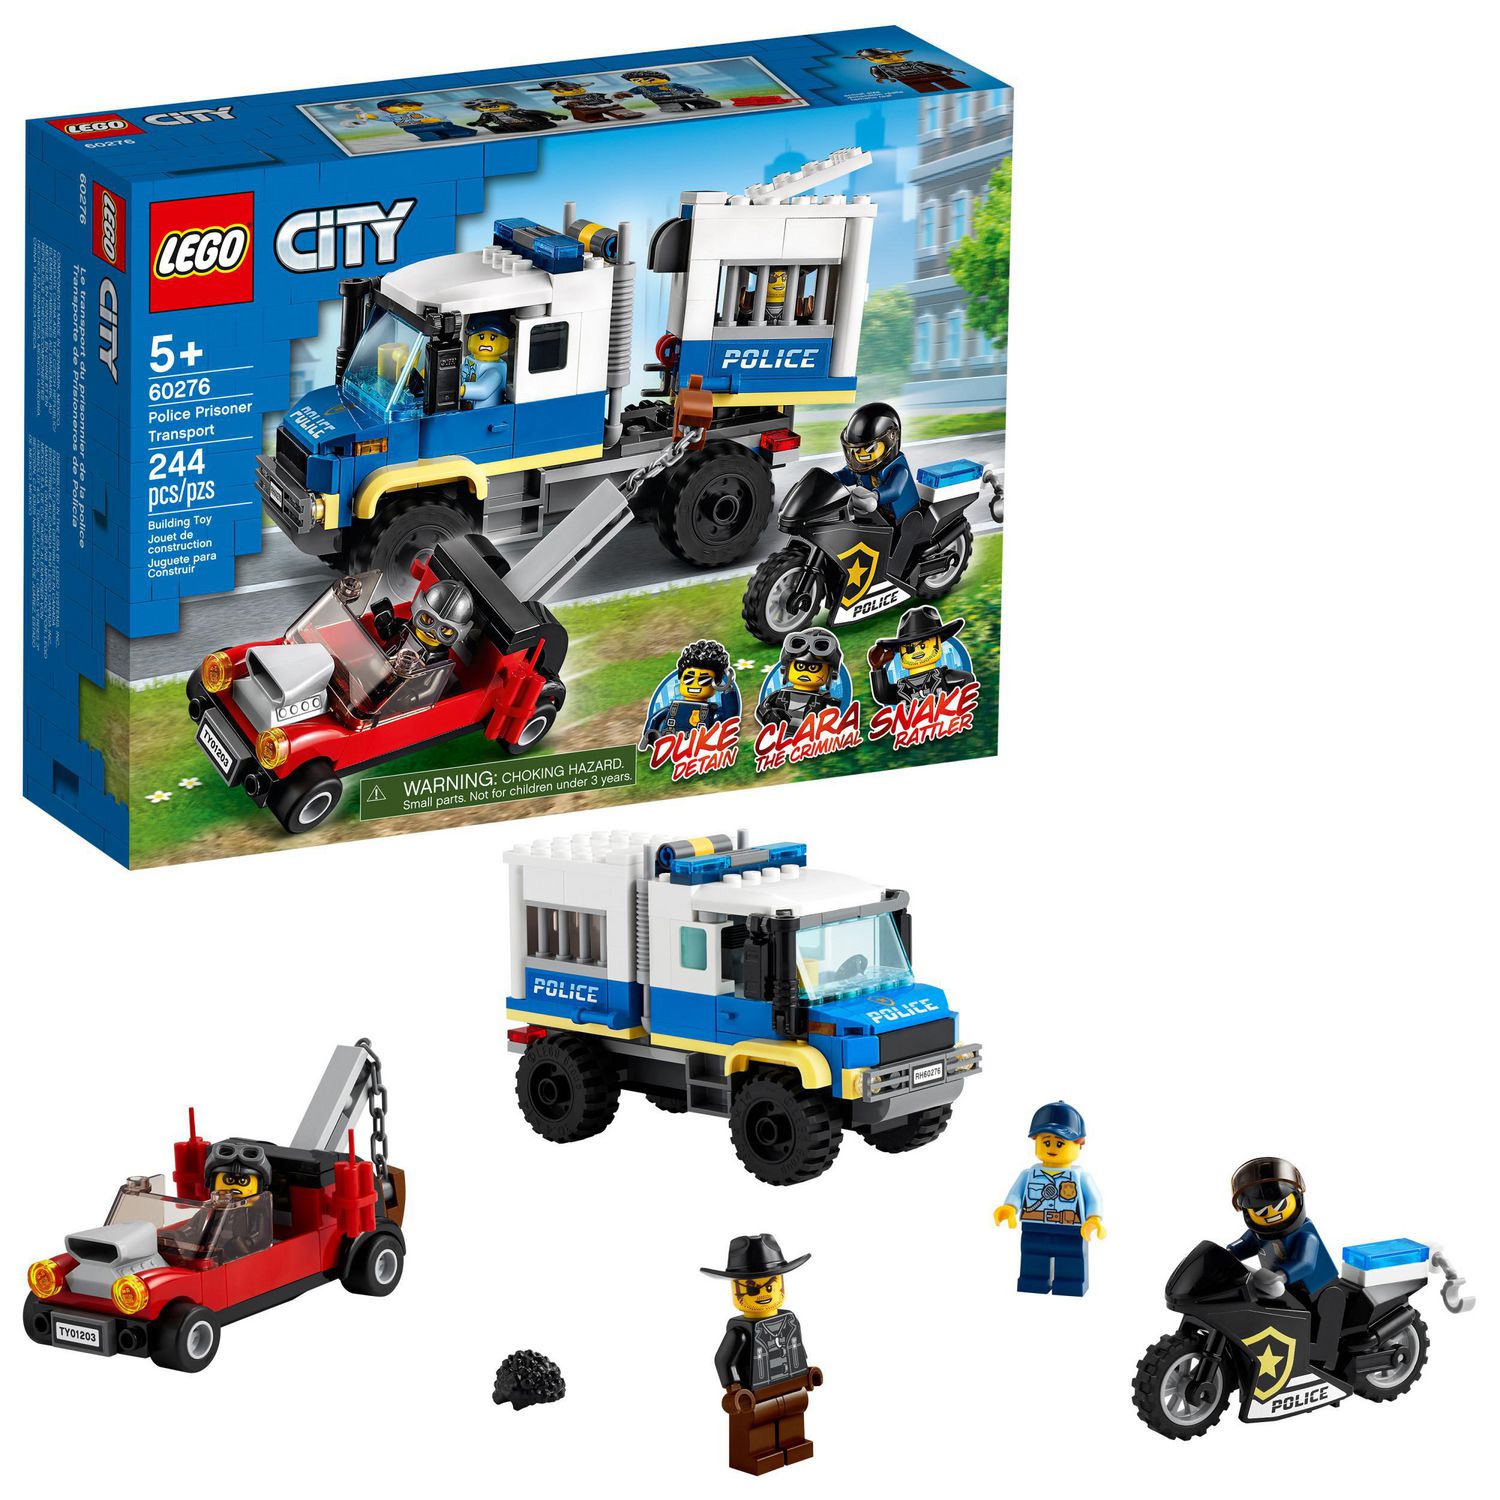 Barcelona symaskine medaljevinder LEGO City Police Prisoner Transport 60276 Toy Building Kit (244 Pieces) |  Walmart Canada